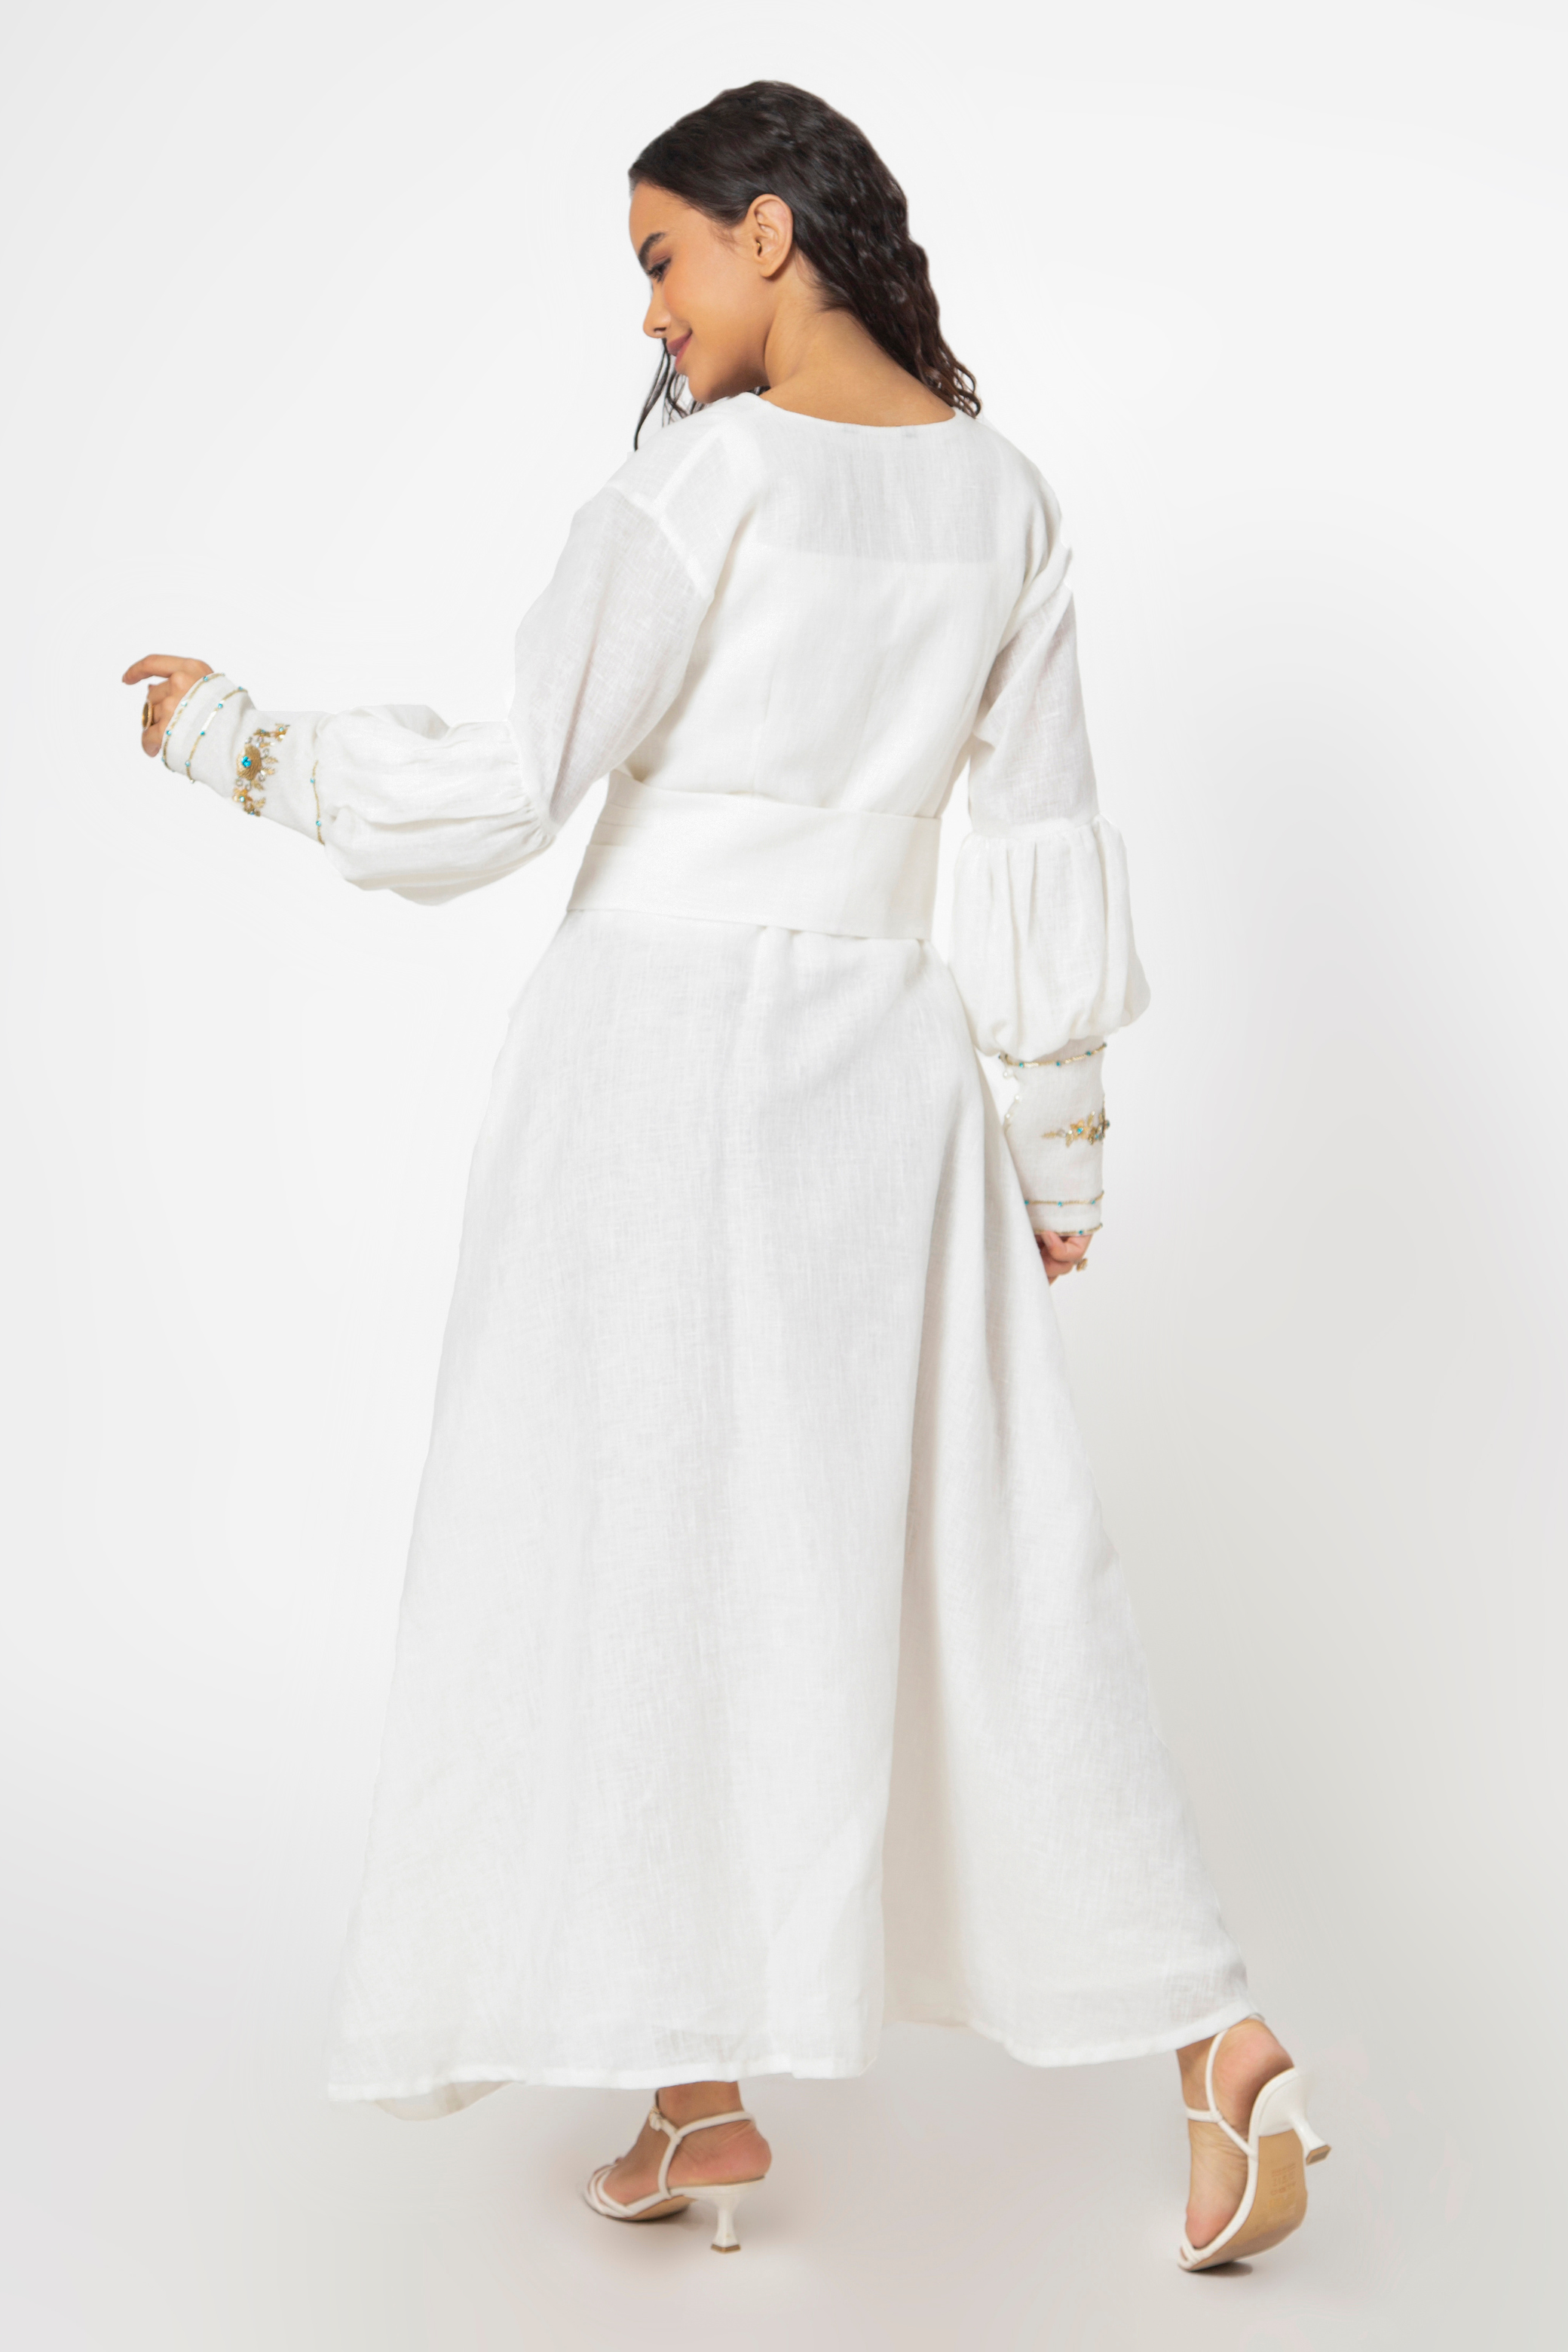 Buy White Dress Online